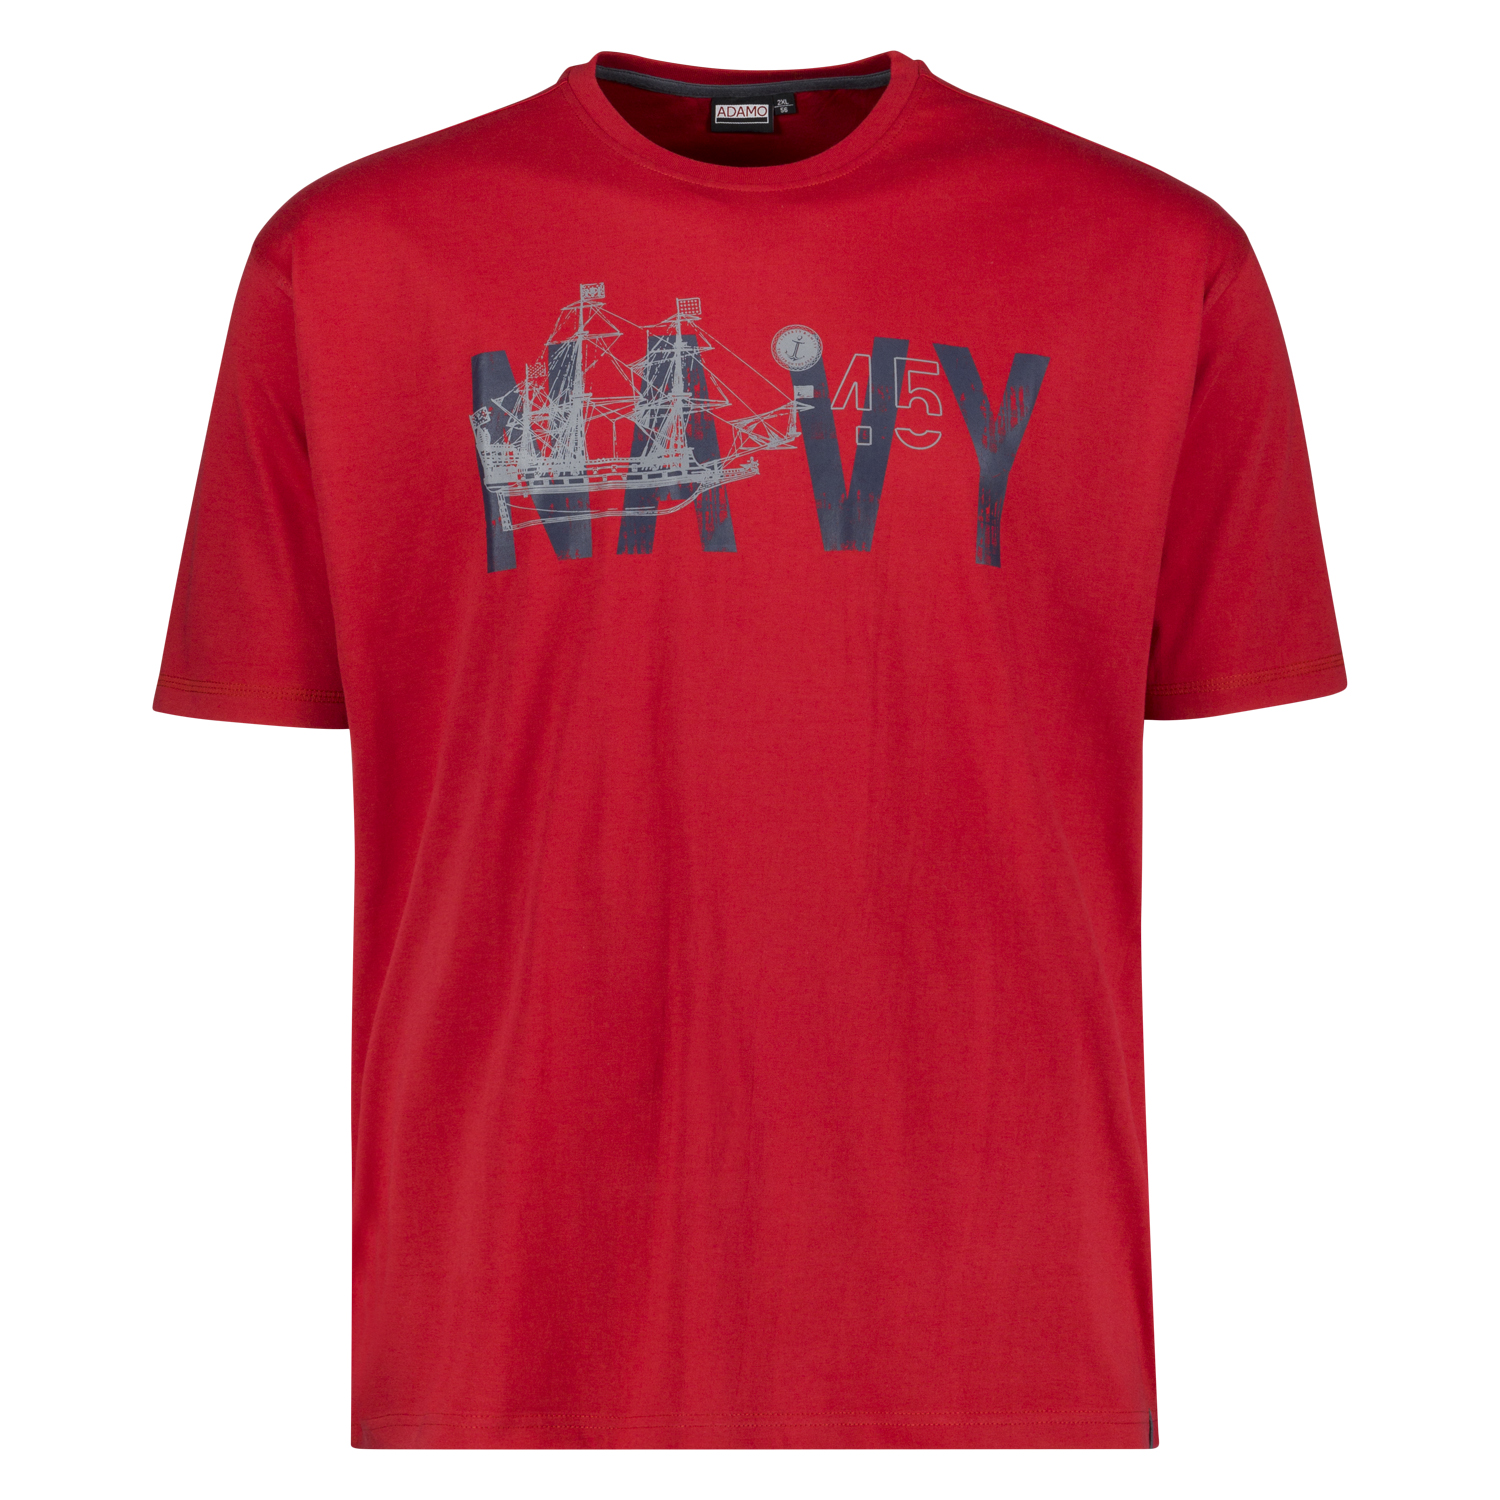 Übergrößen Herren Motivshirt mit Rundhals in rot bedruckt 2XL-10XL von ADAMO Serie "NAVY" 